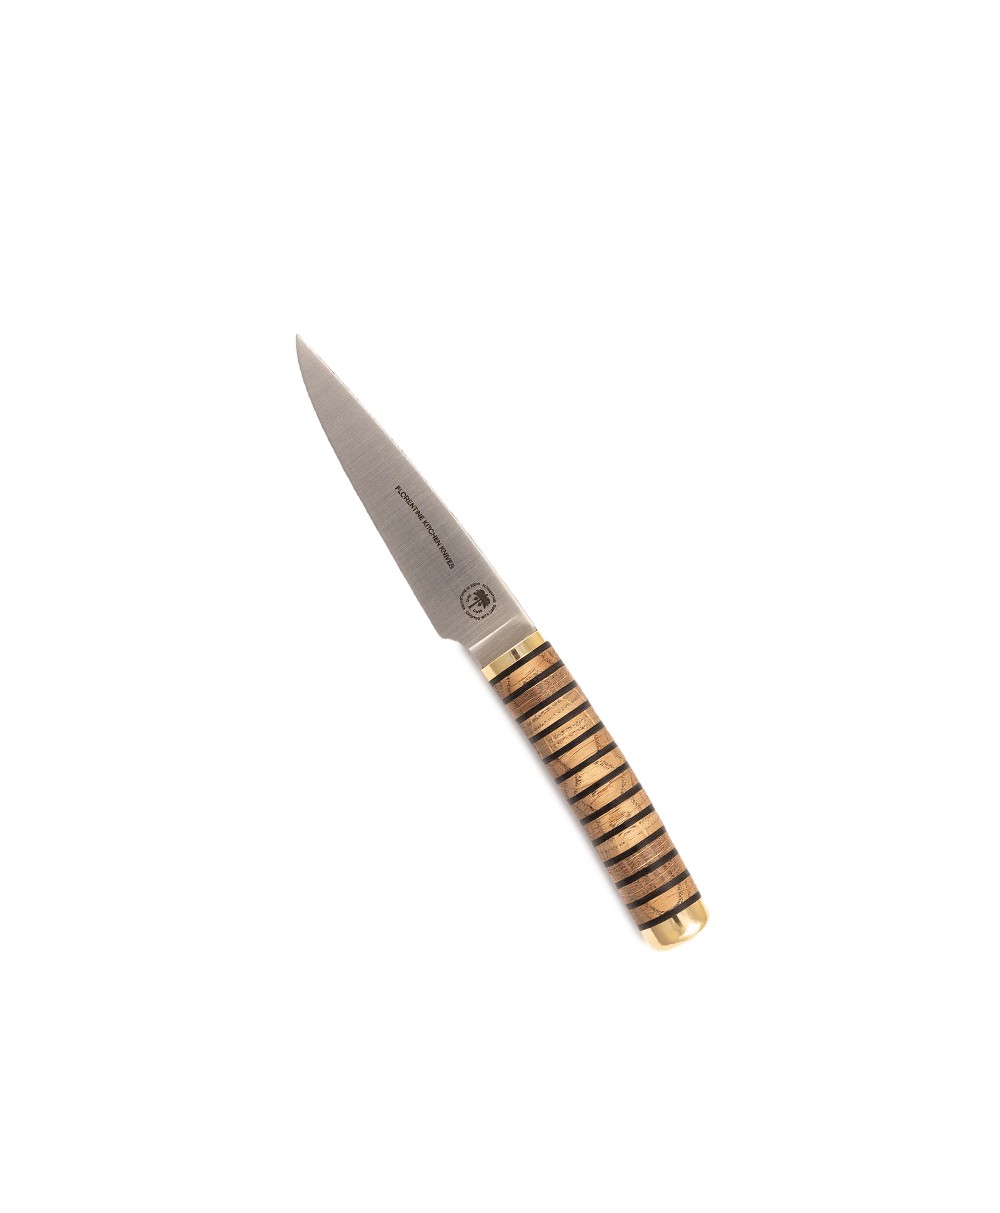 Produktbild des Florentine Paring Knife in wood von Florentine Kitchen Knives im RAUM concept store 